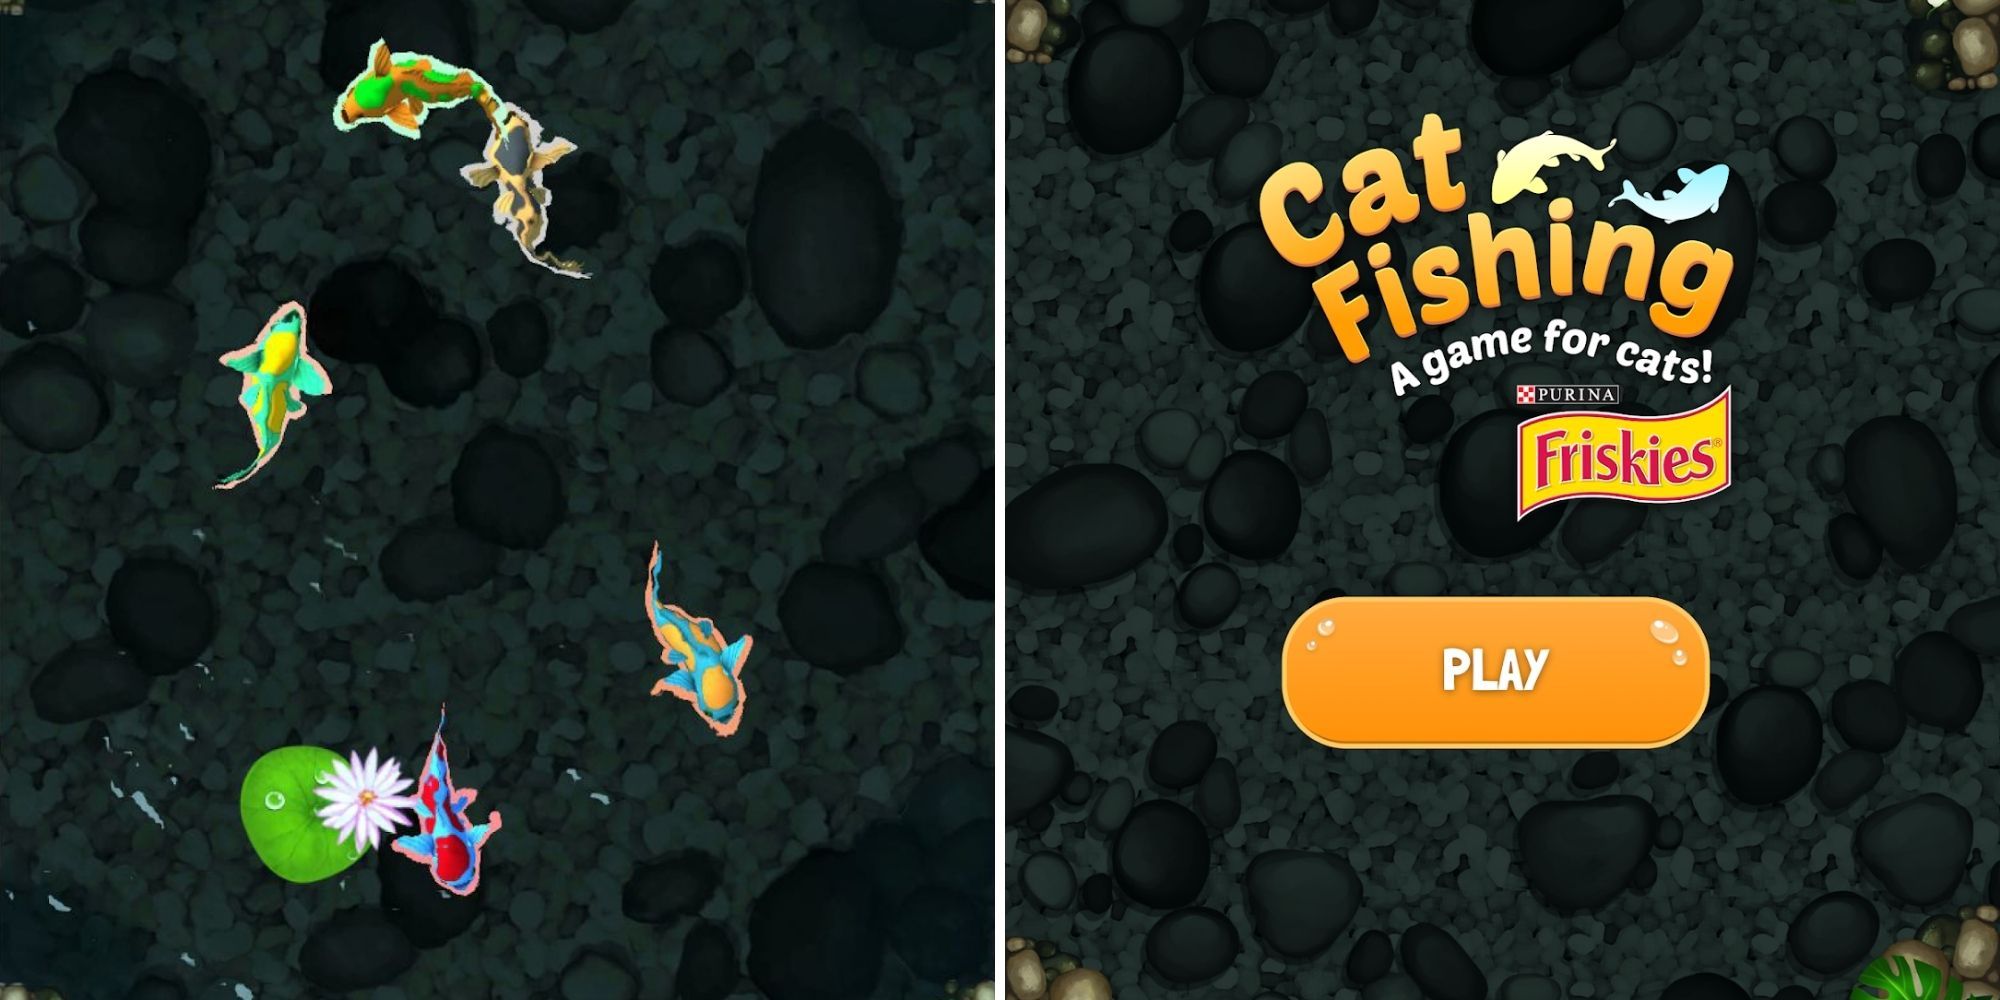 izquierda: diferentes peces nadan alrededor de un estanque;  derecha - pantalla de título de Cat Fishing 2 con un botón Play